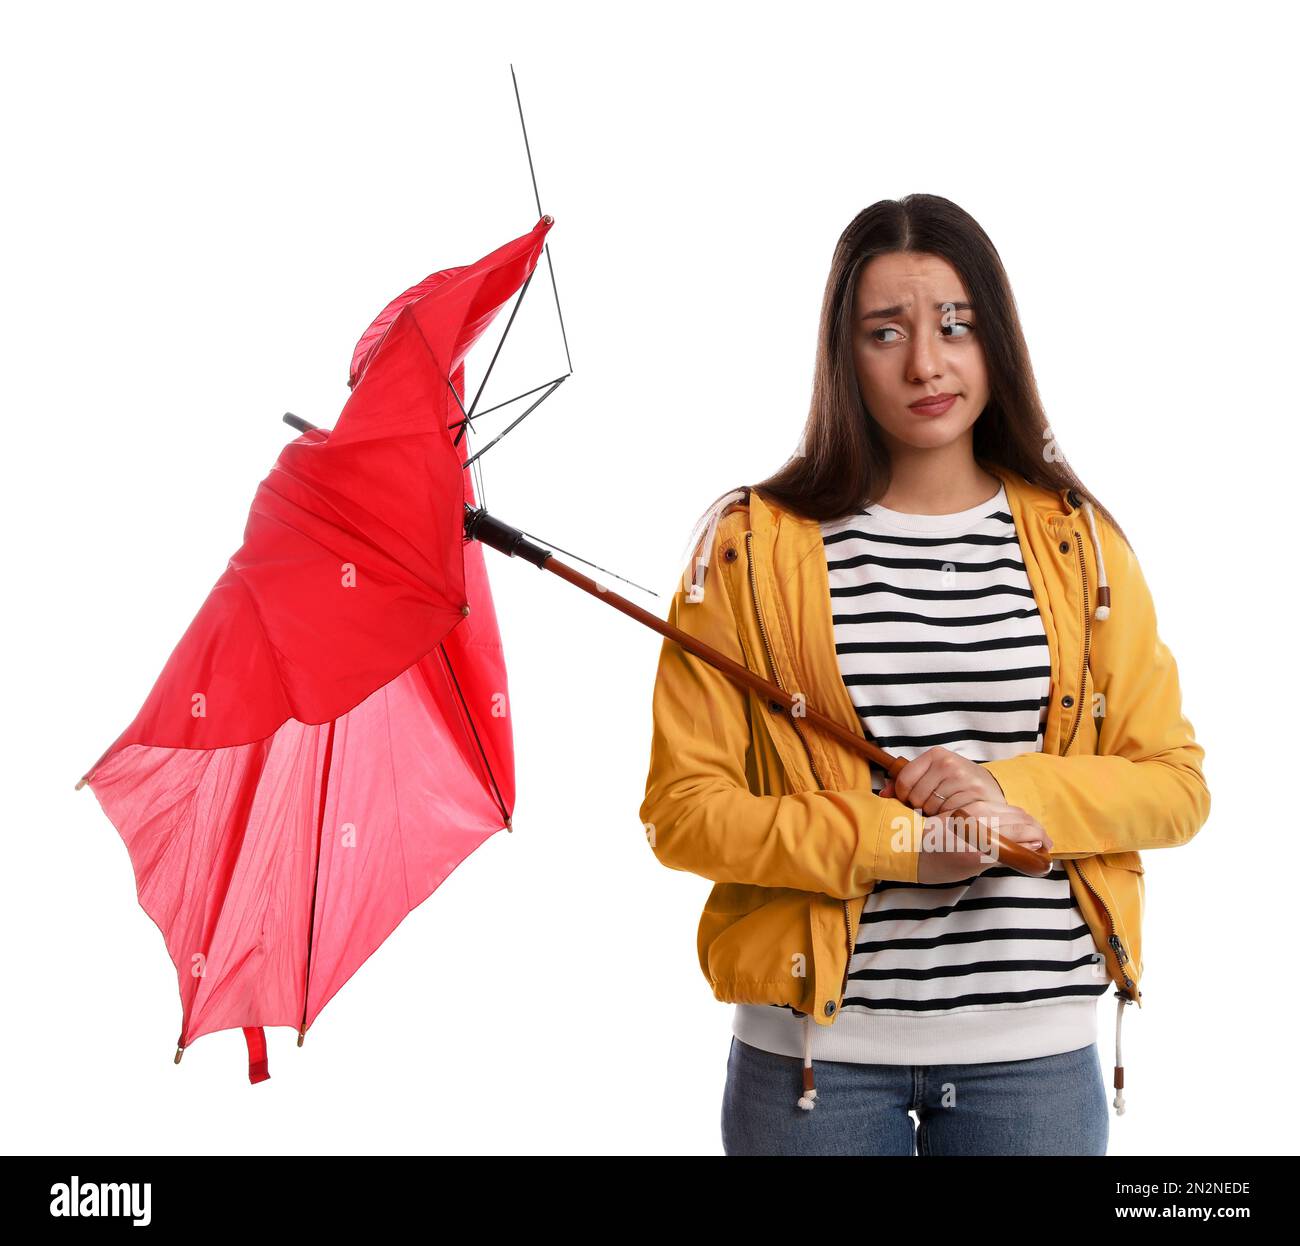 Emotionale Frau mit einem Regenschirm, der durch Windstoß auf weißem Hintergrund zerbrochen wurde Stockfoto